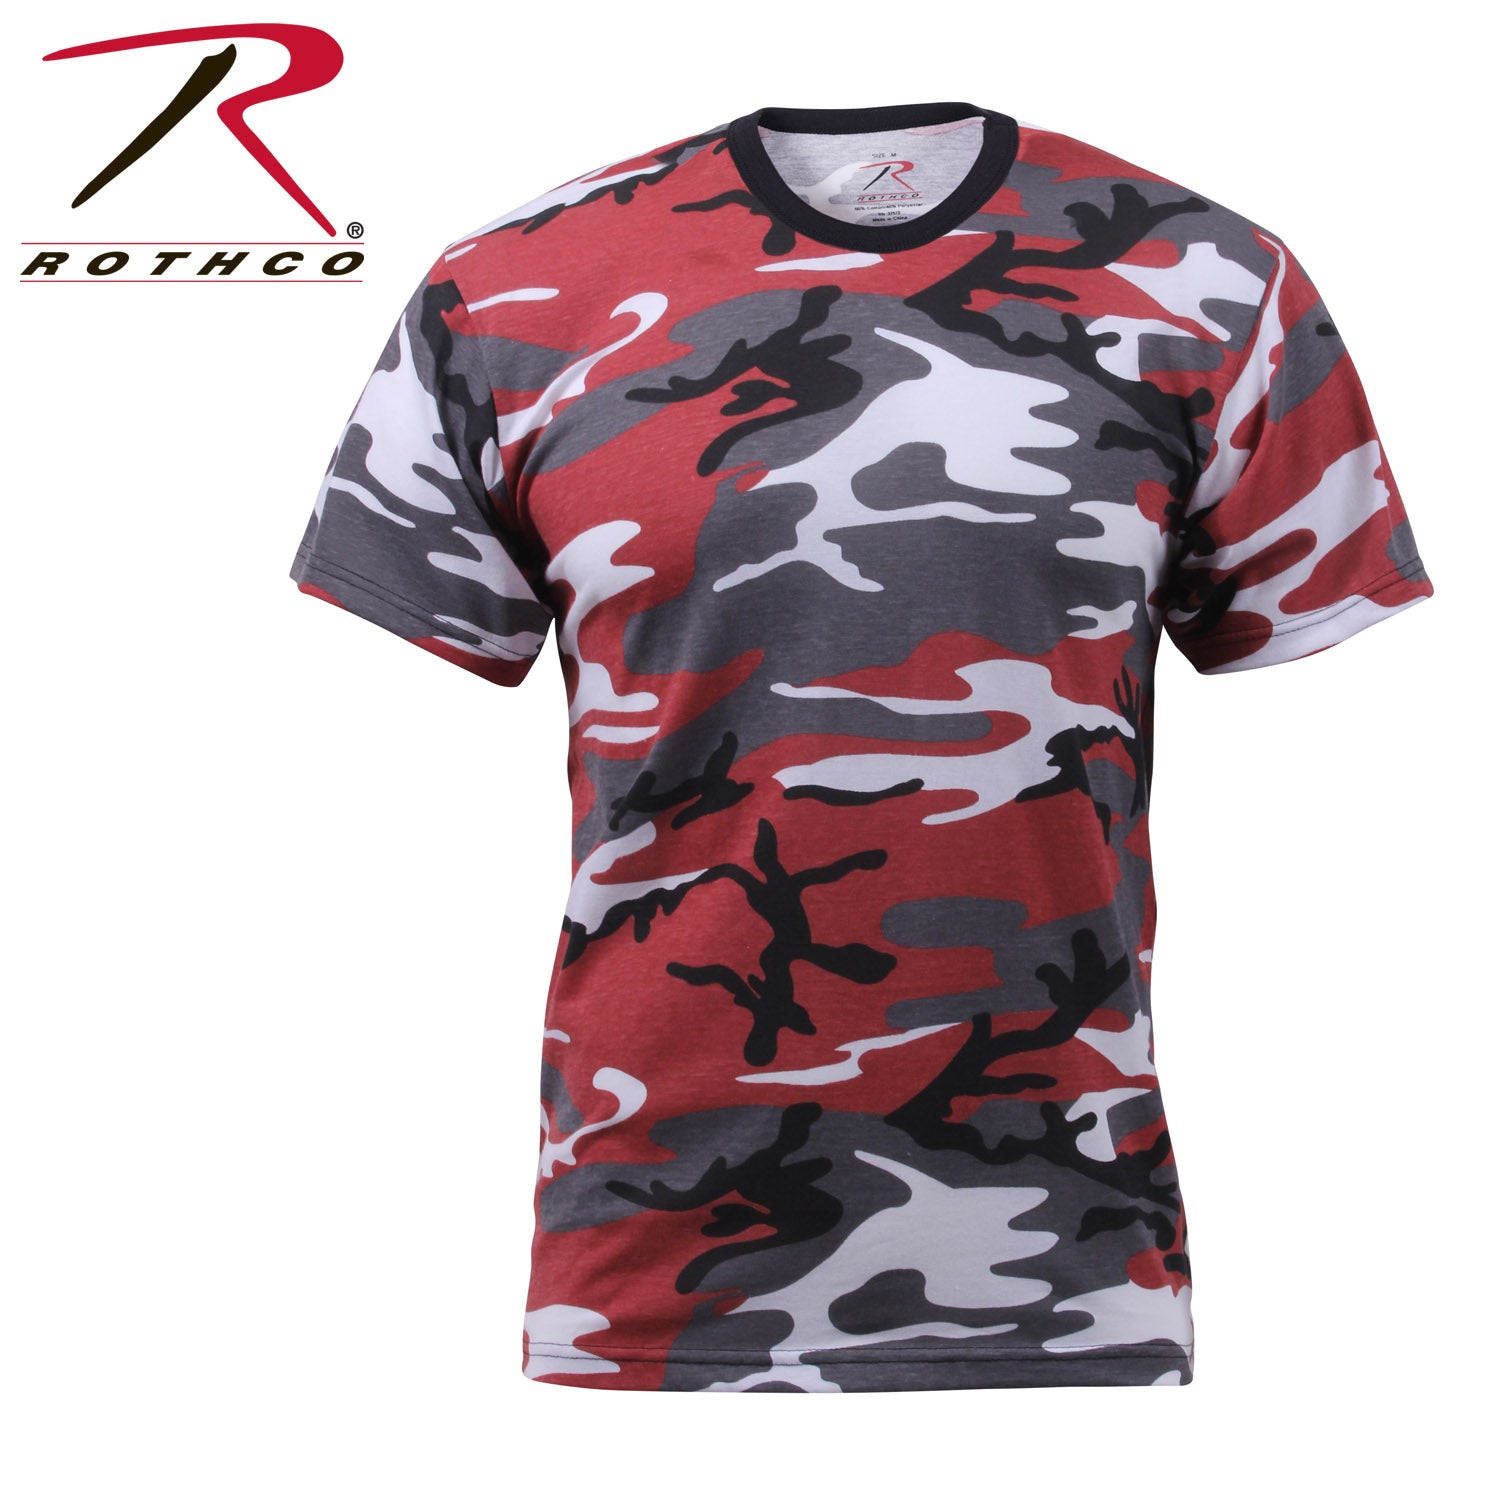 Rothco Color Camo T-Shirt